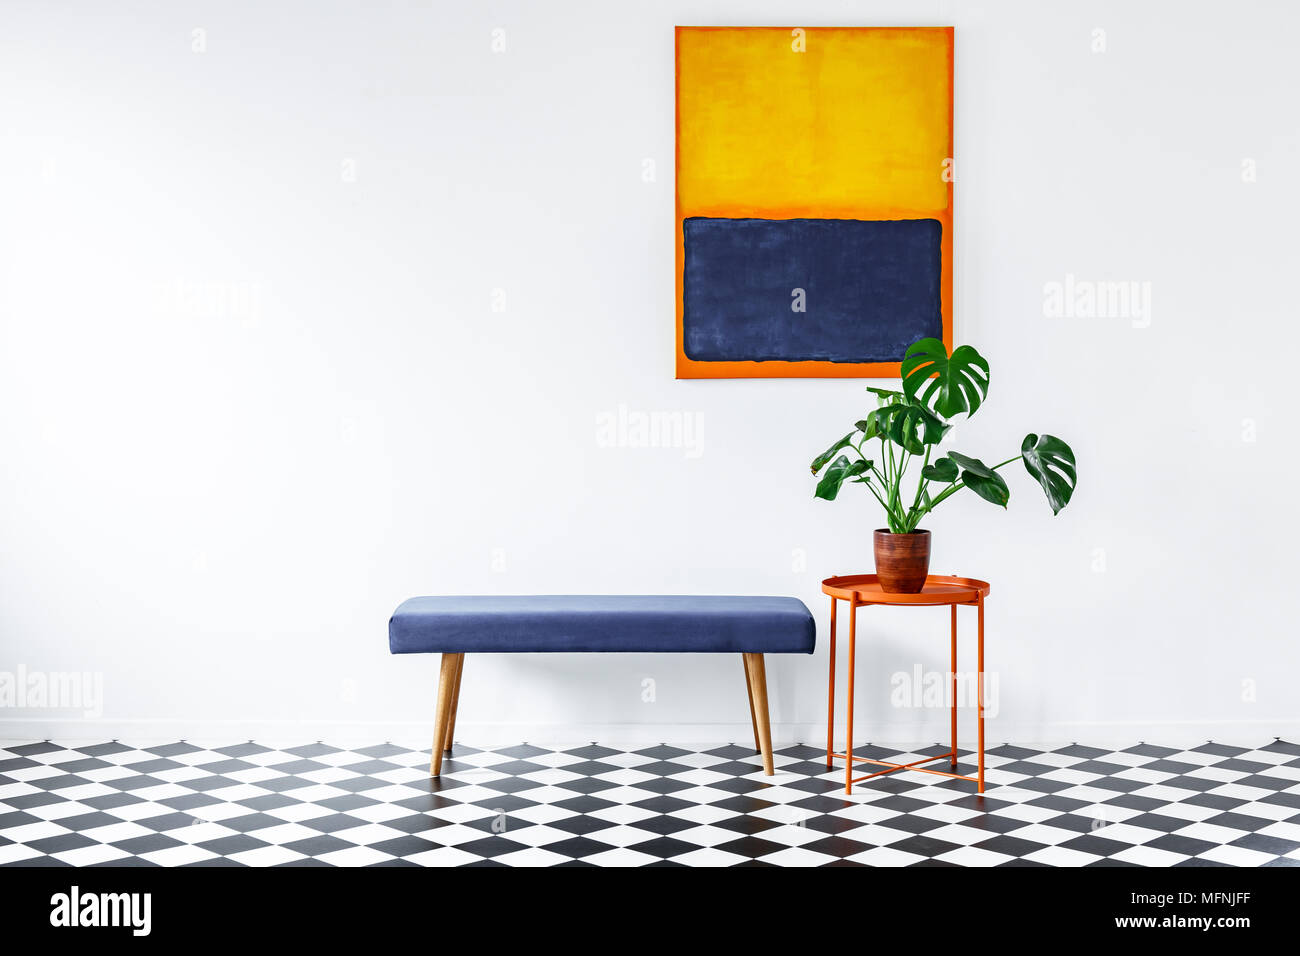 Monstera plante sur une table côté orange dans un style minimaliste, appartement blanc intérieur avec des éléments colorés et gallery Banque D'Images